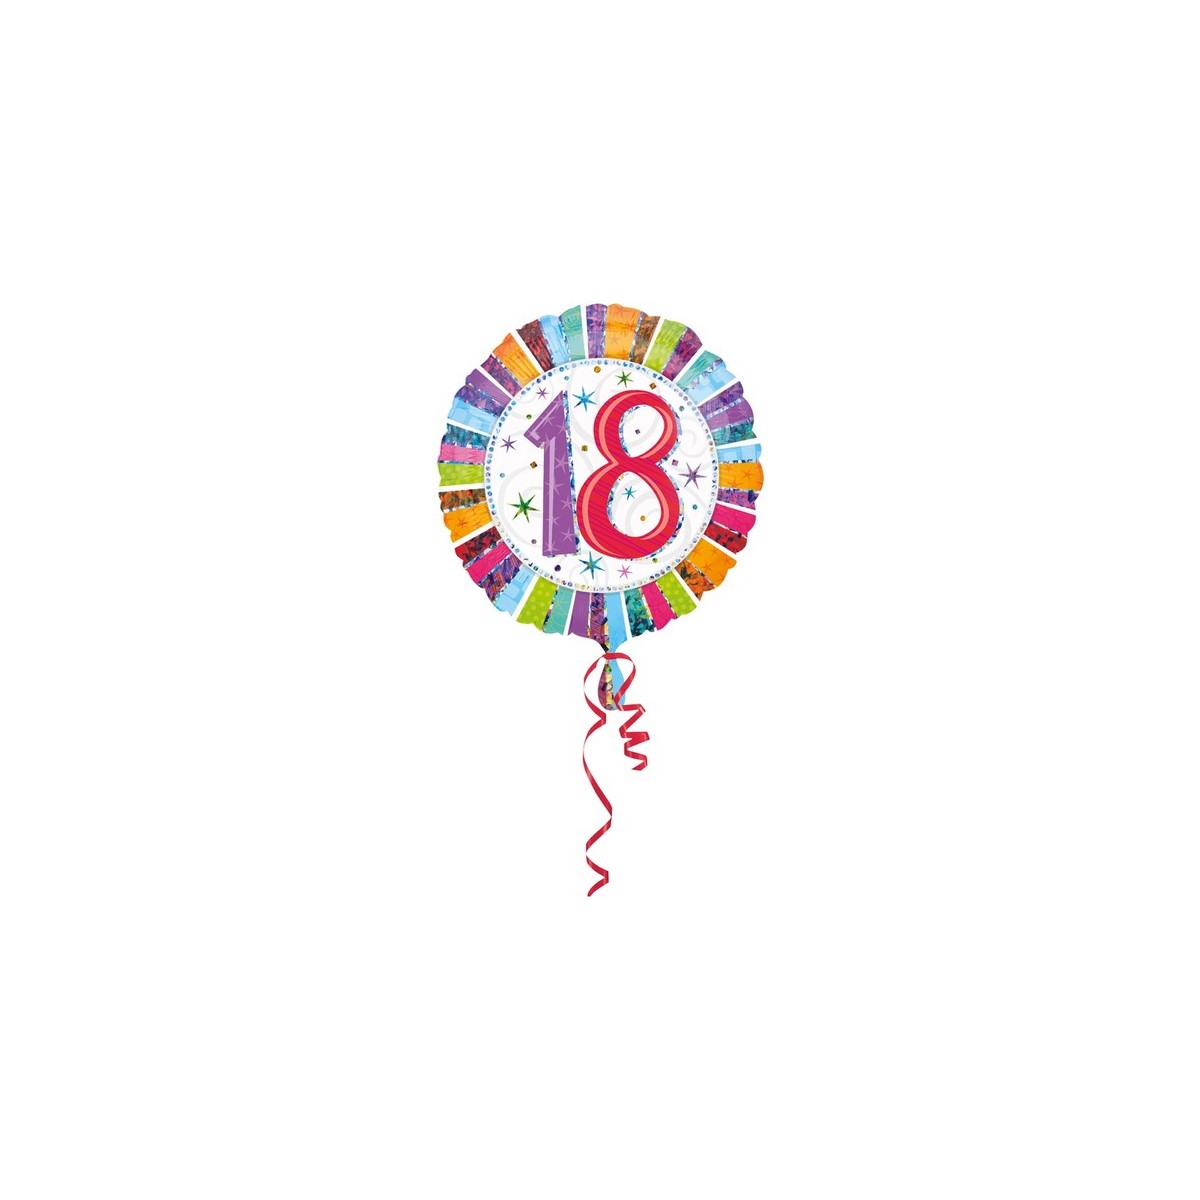 18 ans chiffres 🤩😍 #surprise #chiffreslumineux #chiffres